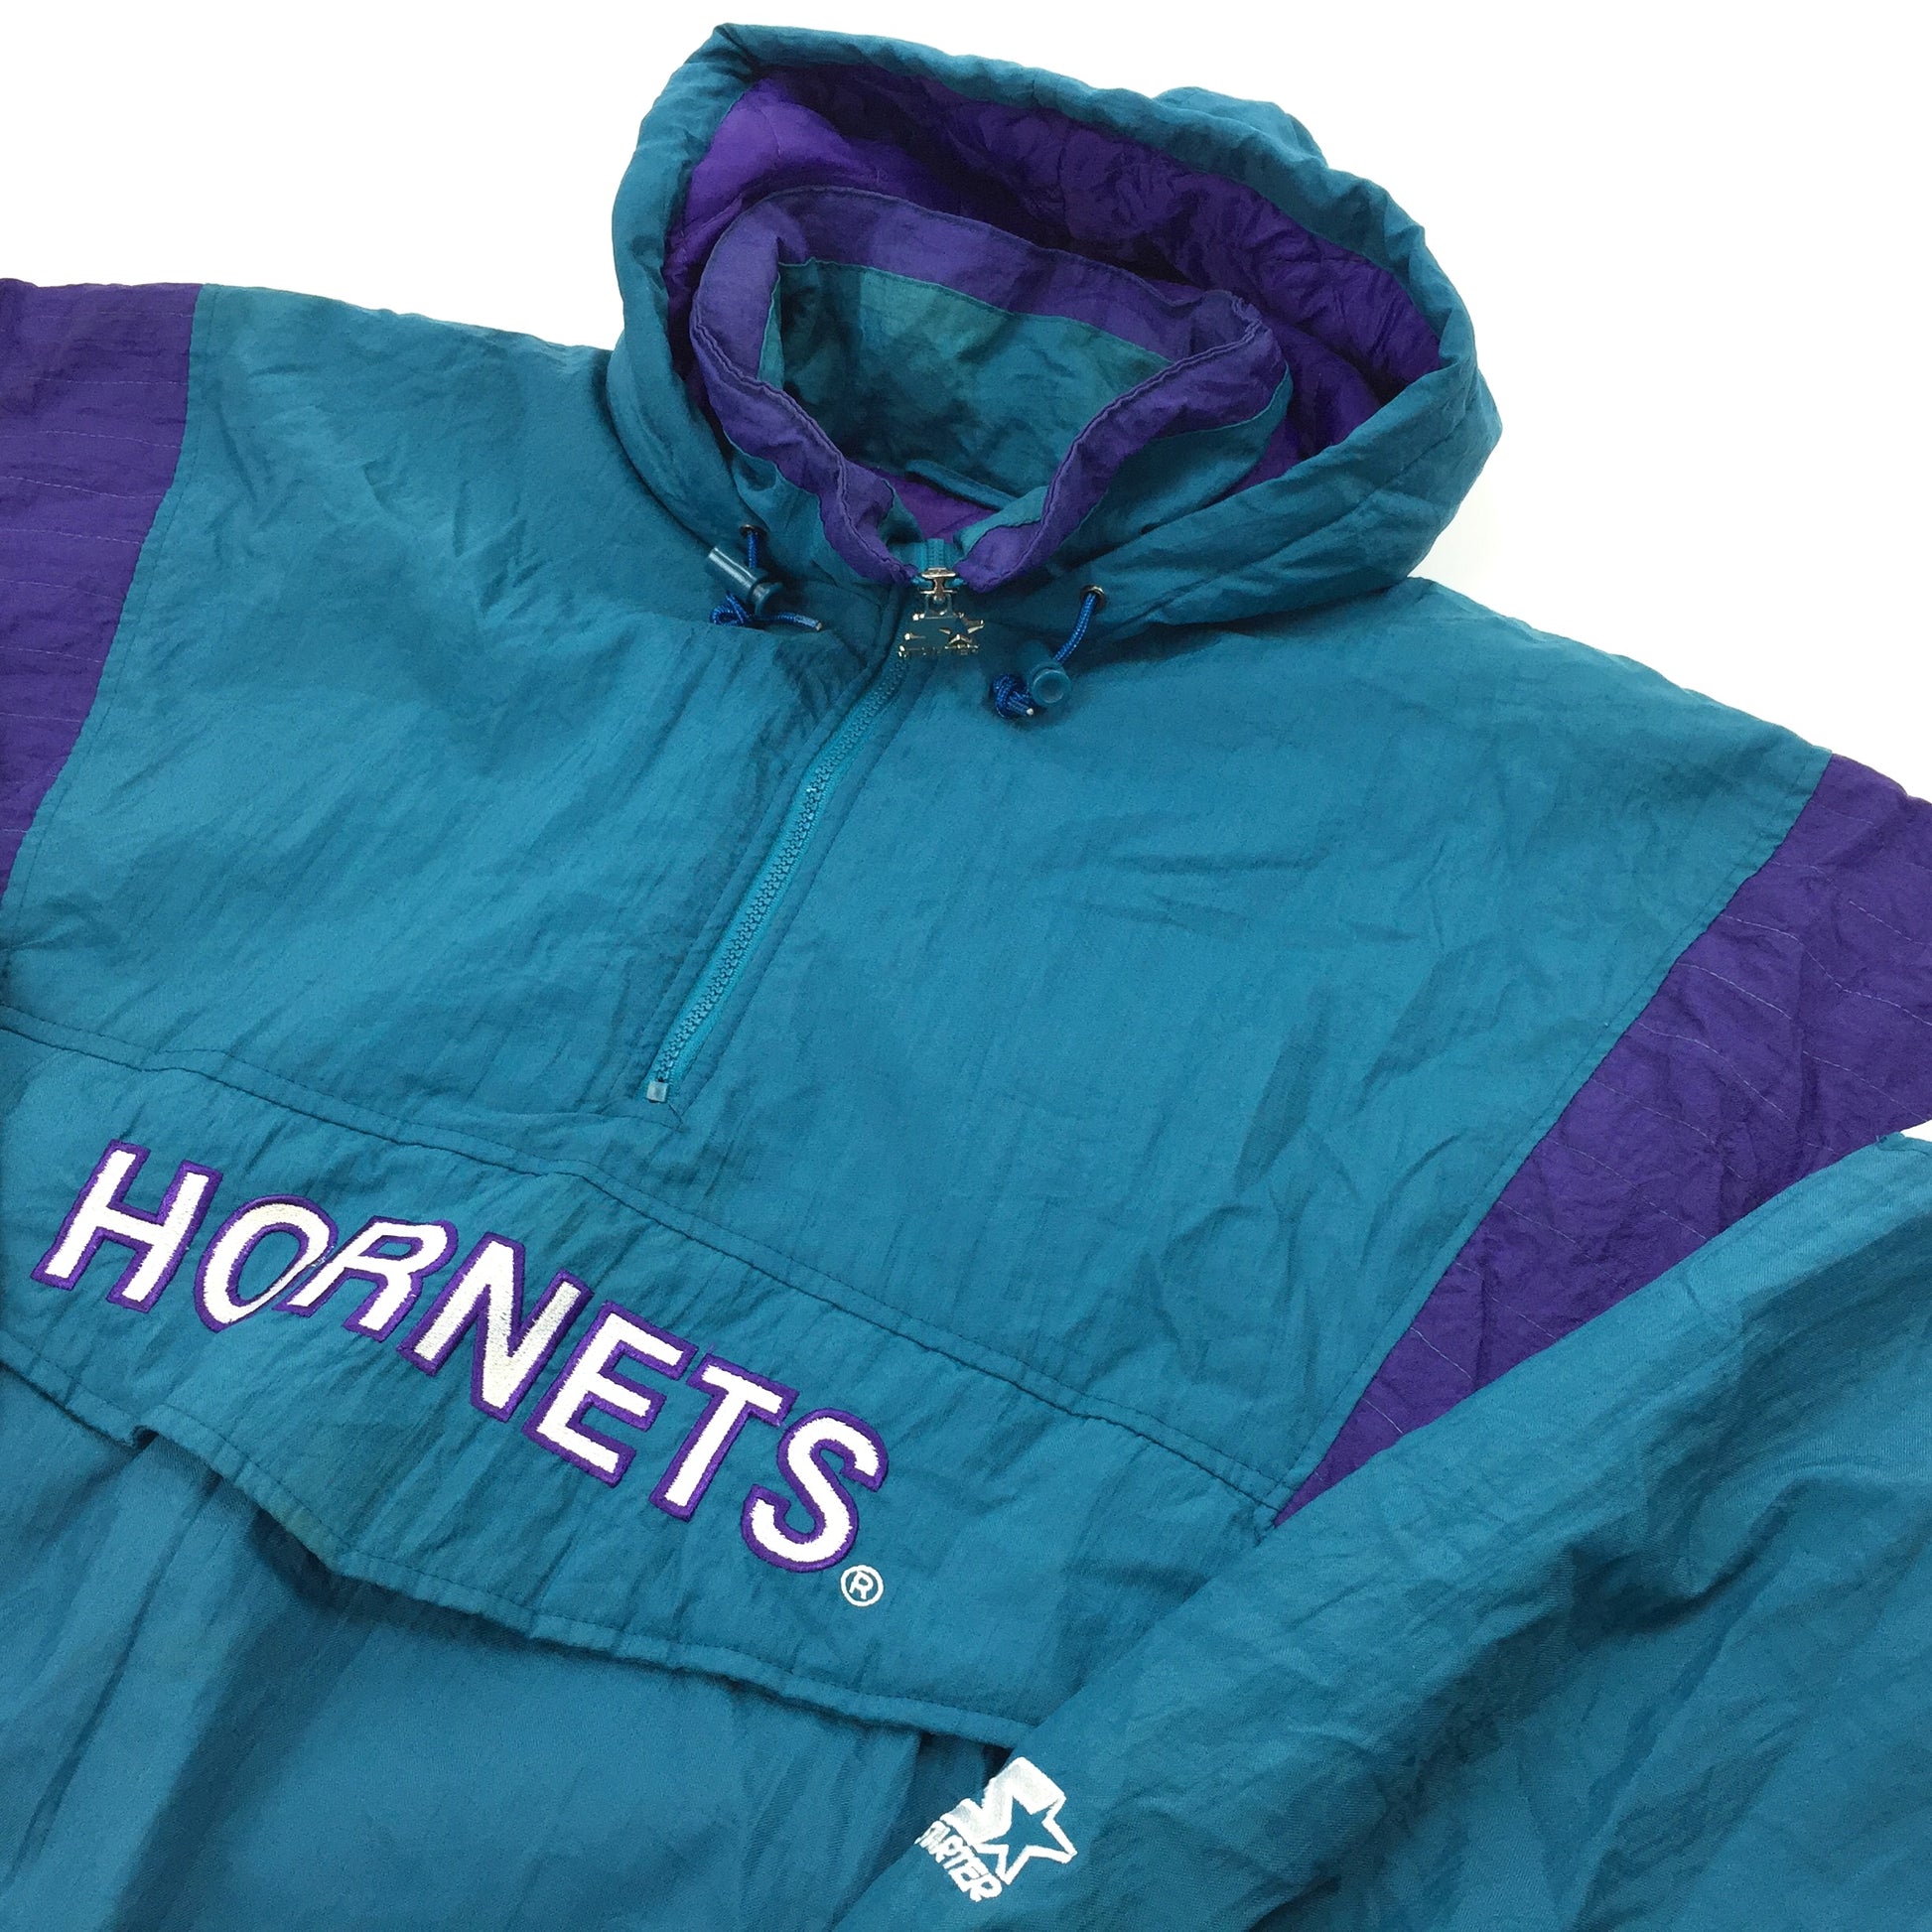 01045 Starter Vintage Charlotte Hornets Basketball Jacket – PAUL'S